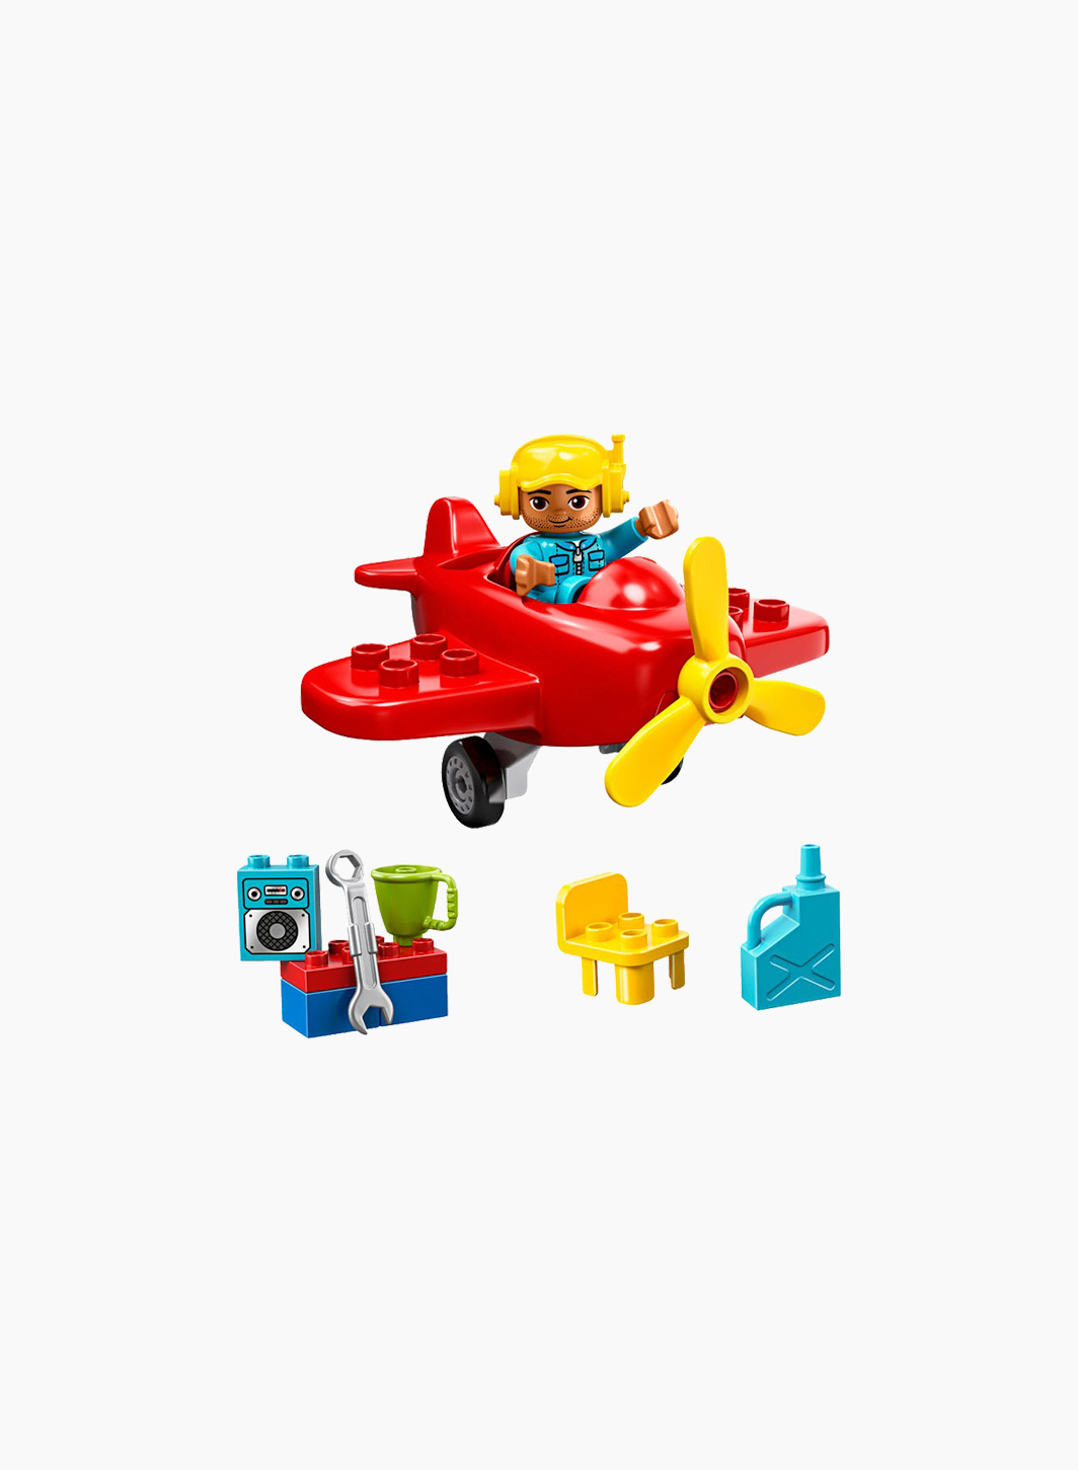 Lego Duplo Constructor Plane